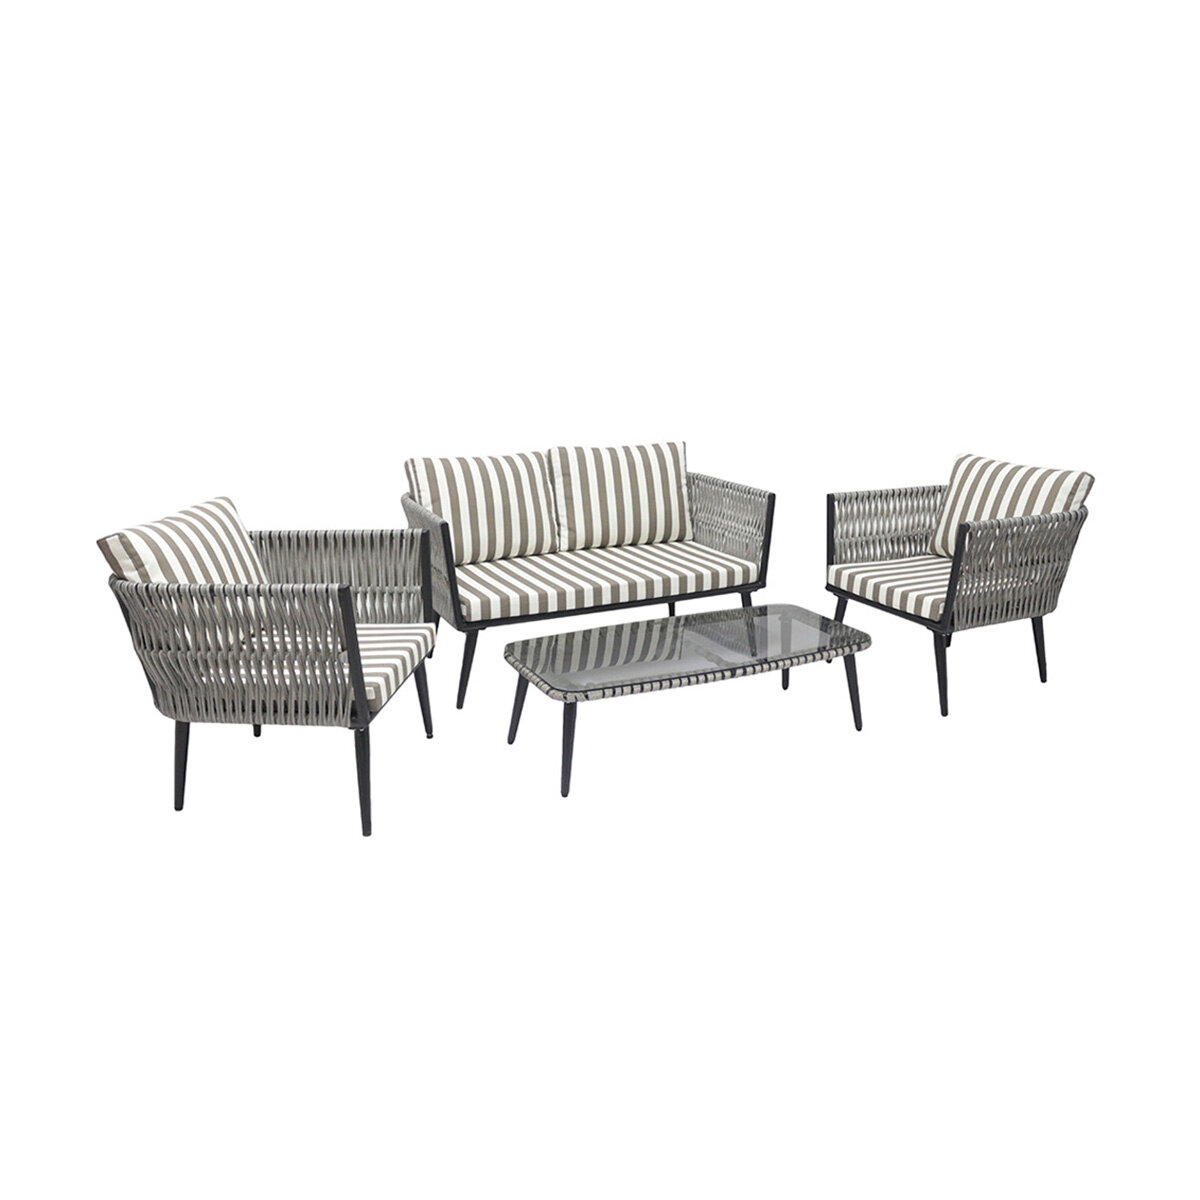 Комплект садовой мебели Alfart Tinto3 (2 кресла, 1 диван, 1 стол), графит